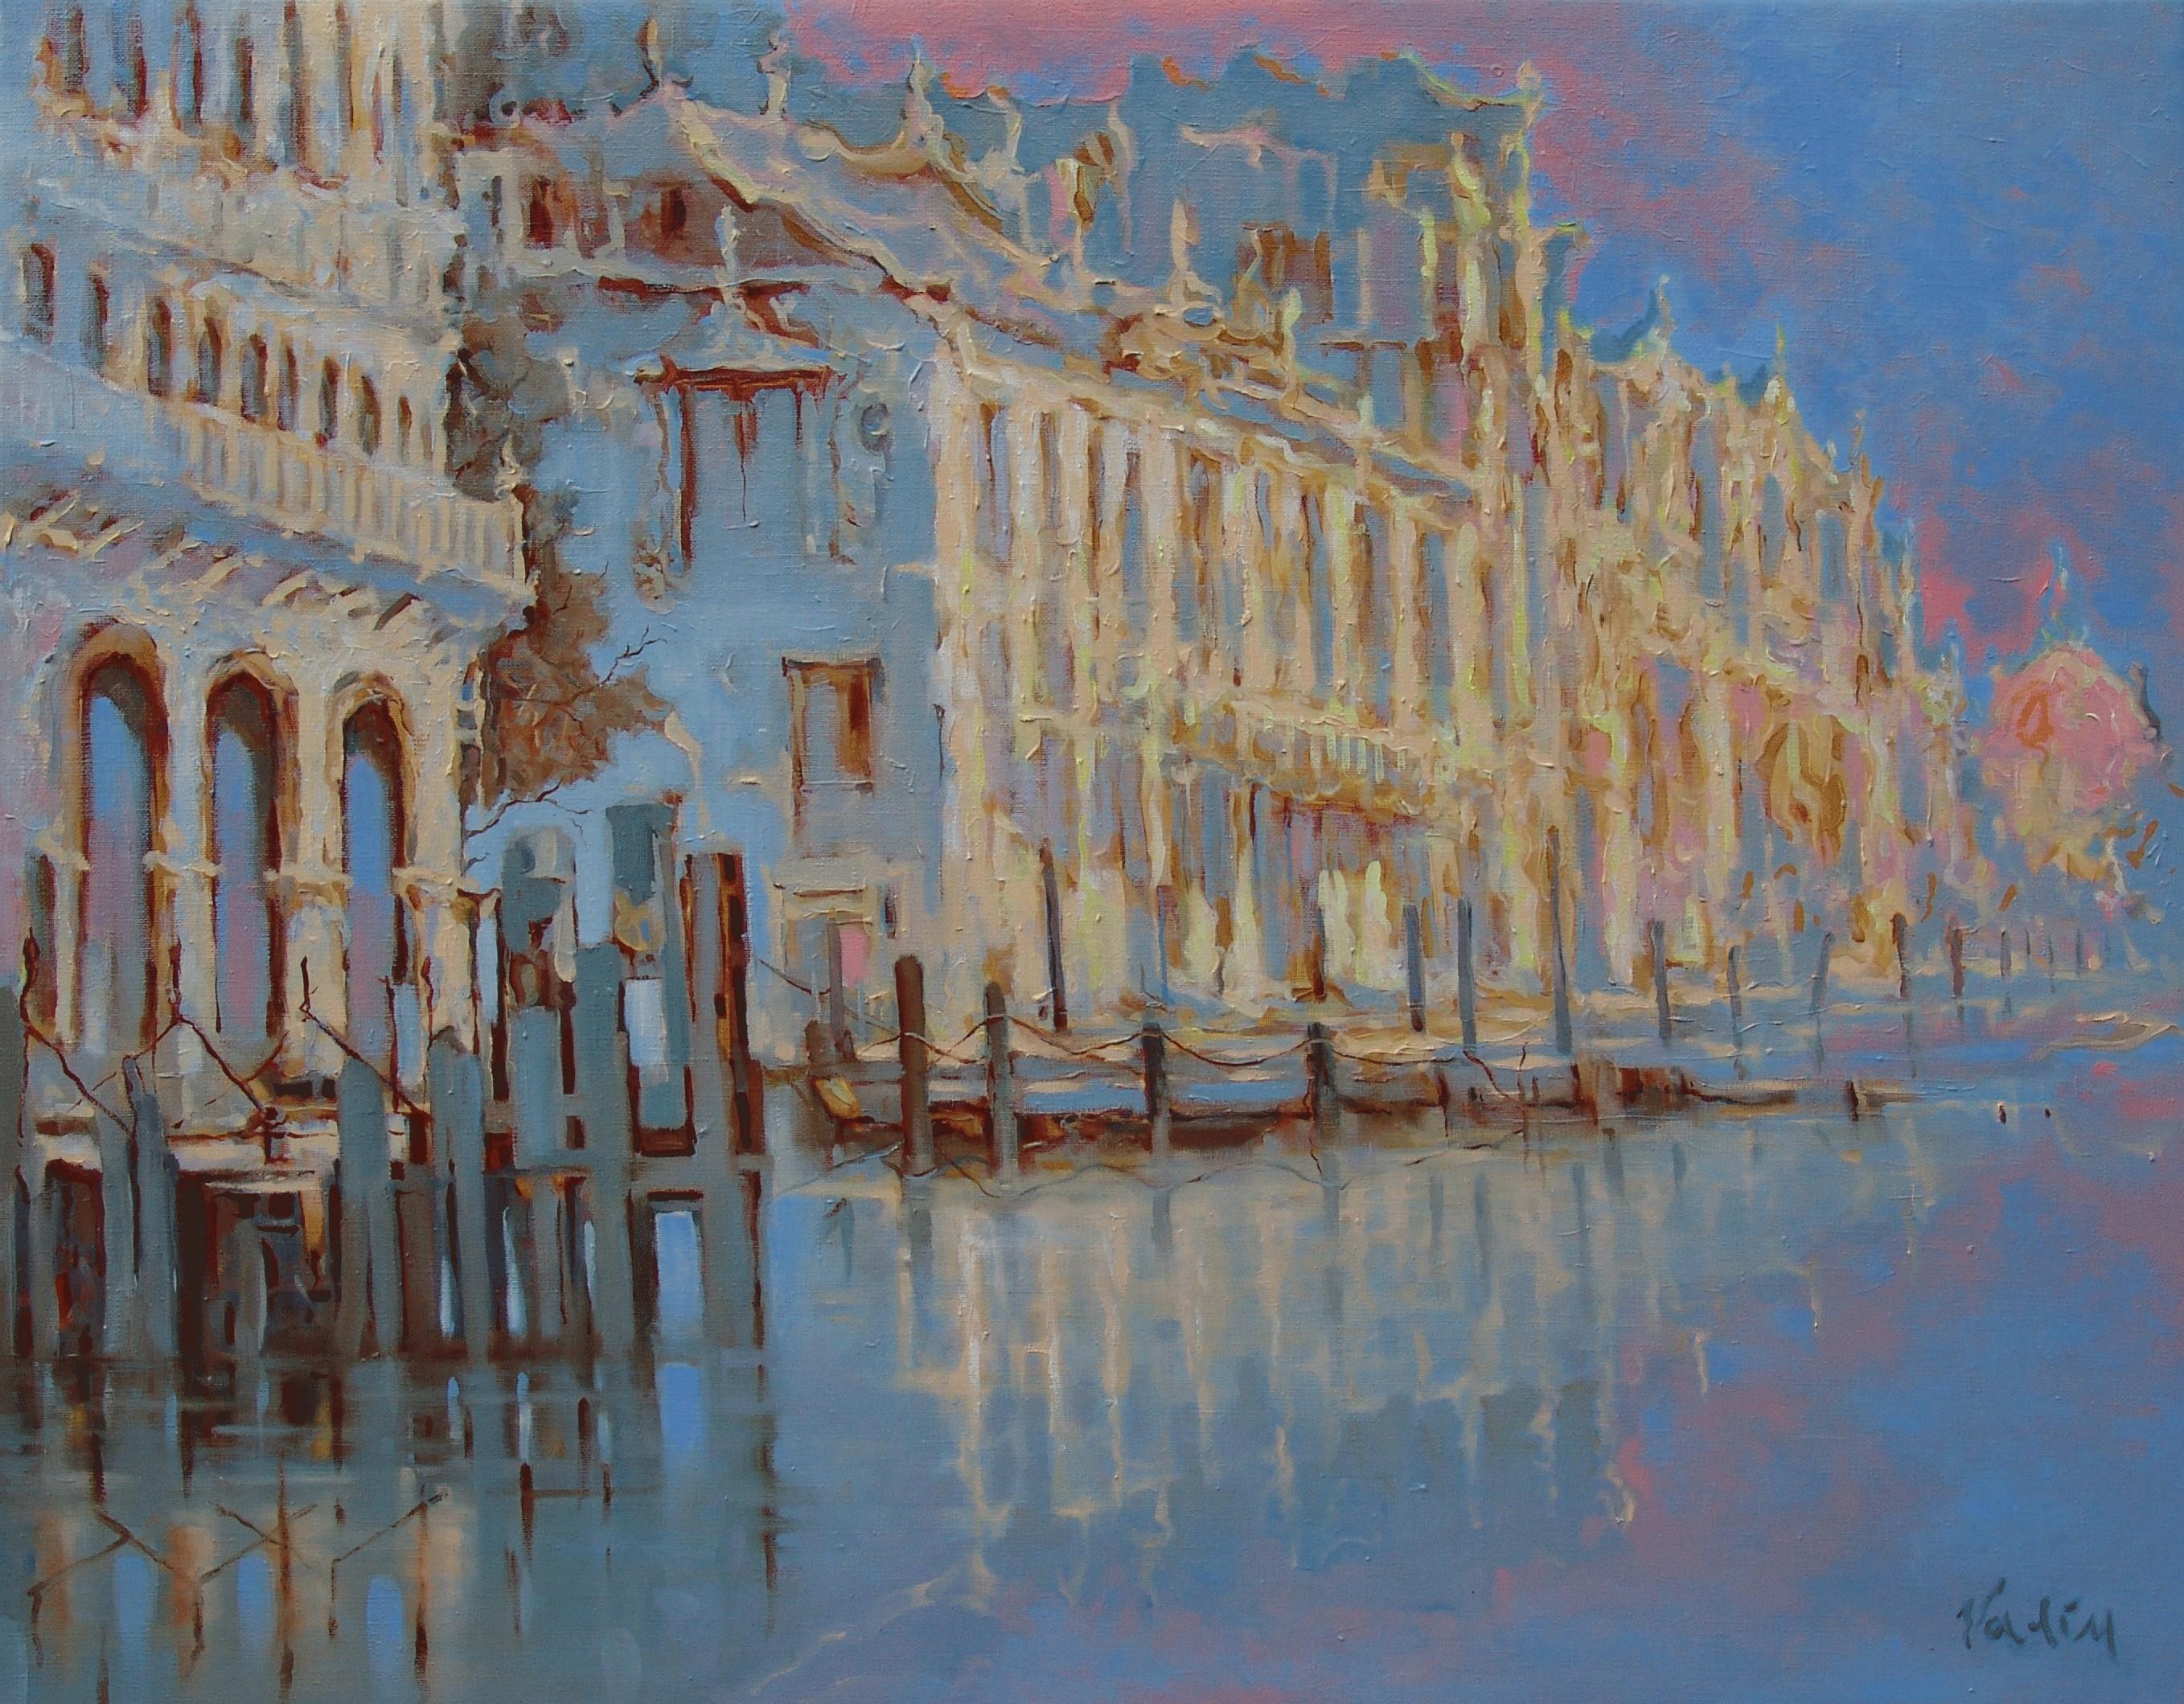 Vadim Kovalev Landscape Painting - Venice. Oil on canvas, 73x93 cm